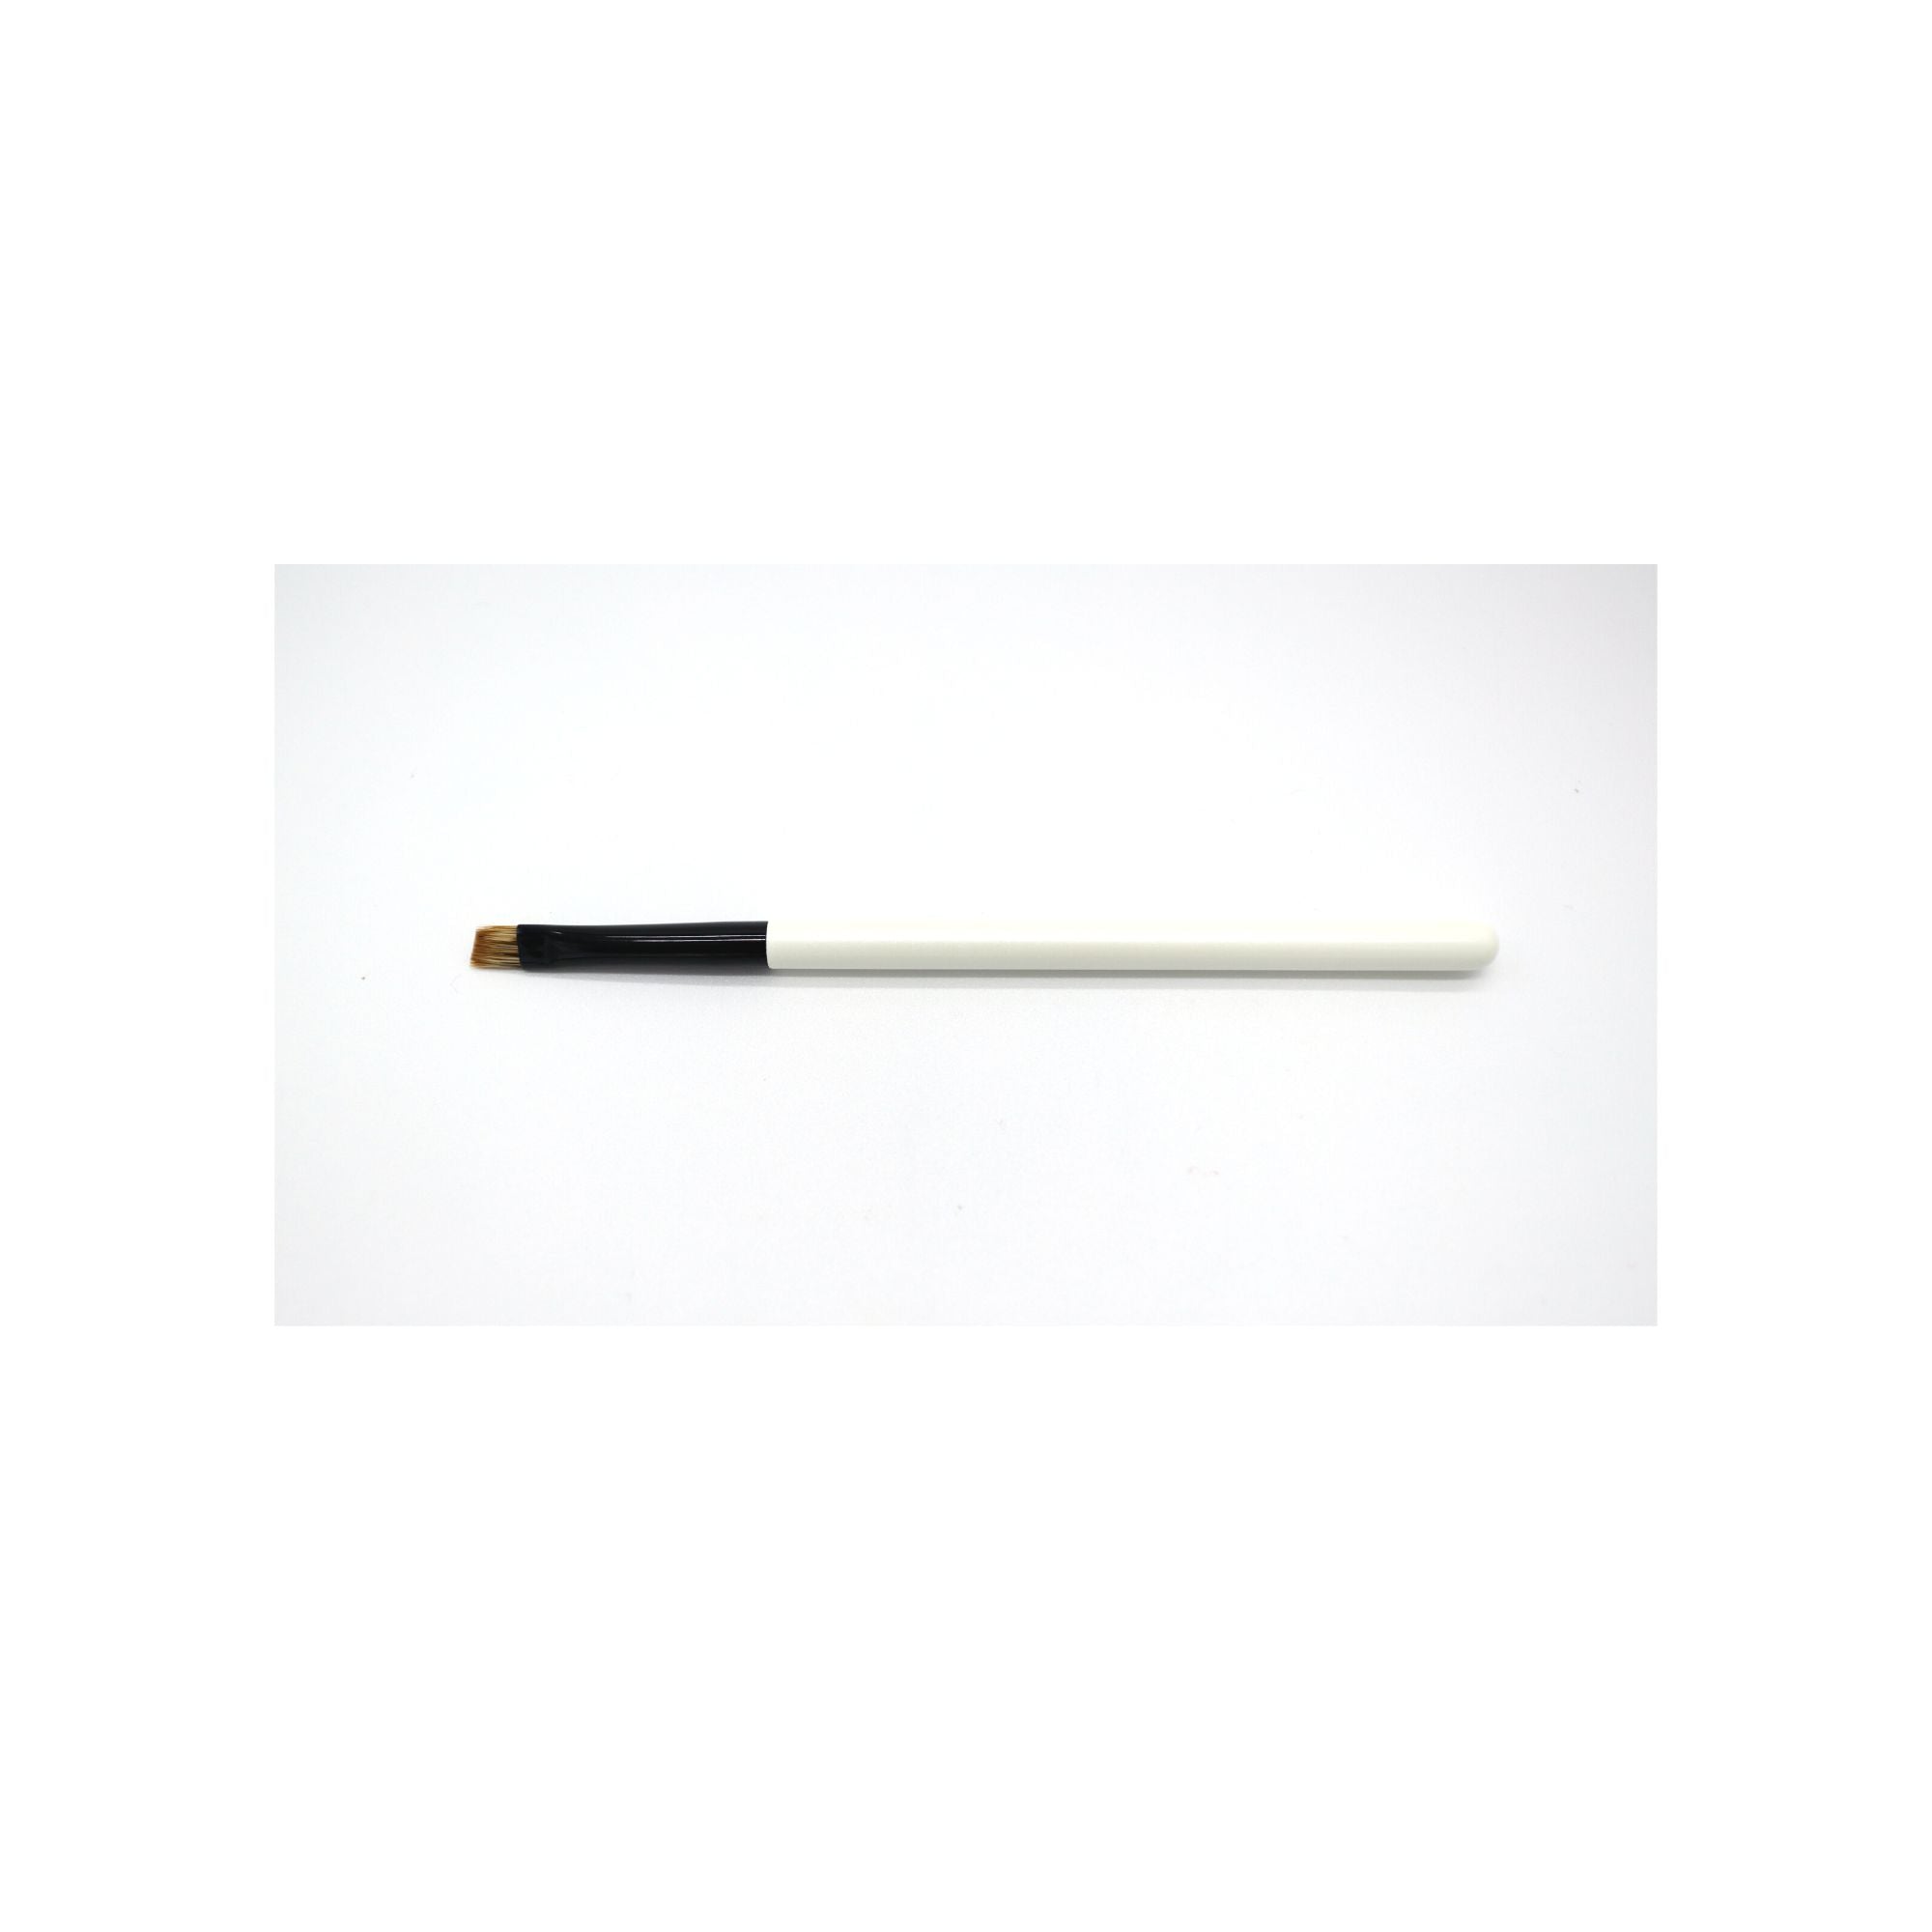 Koyudo Eyebrow Brush (2210-10) - Fude Beauty, Japanese Makeup Brushes